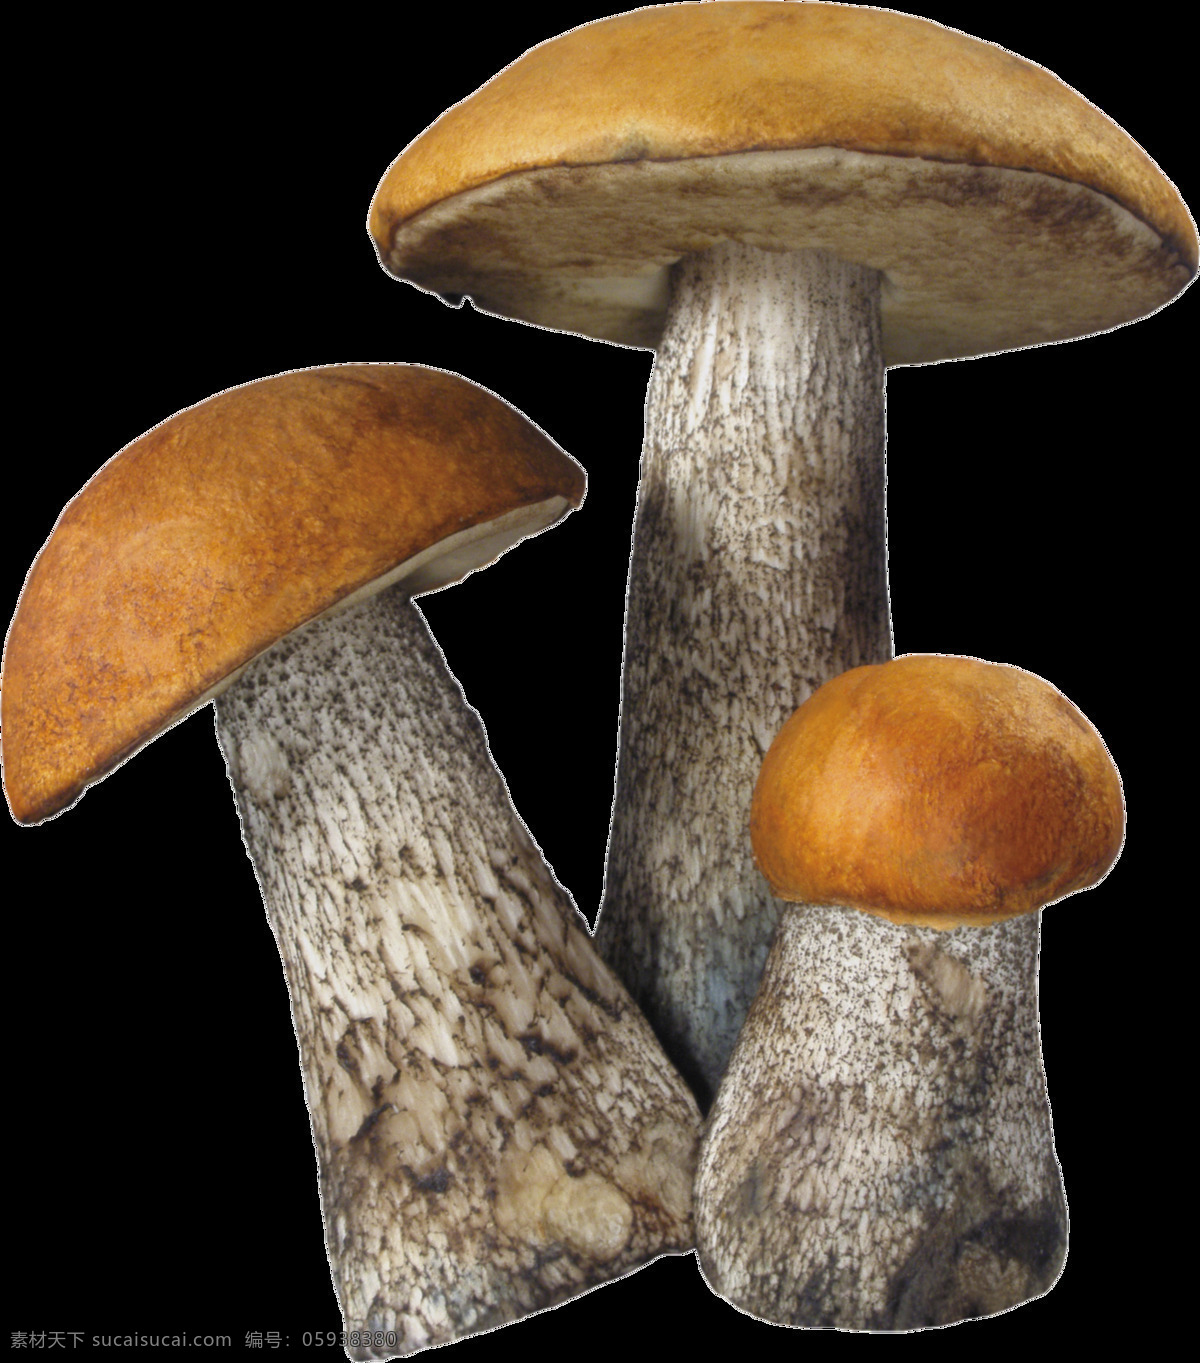 三维 蘑菇 图 免 抠 透明 层 蘑菇卡通画 可爱蘑菇 蘑菇头 蘑菇矢量图 蛇蘑菇 白蘑菇 菇 野生蘑菇 新鲜香菇 干香菇 鲜蘑 卡通香菇 椴木香菇 香菇素材 野生香菇